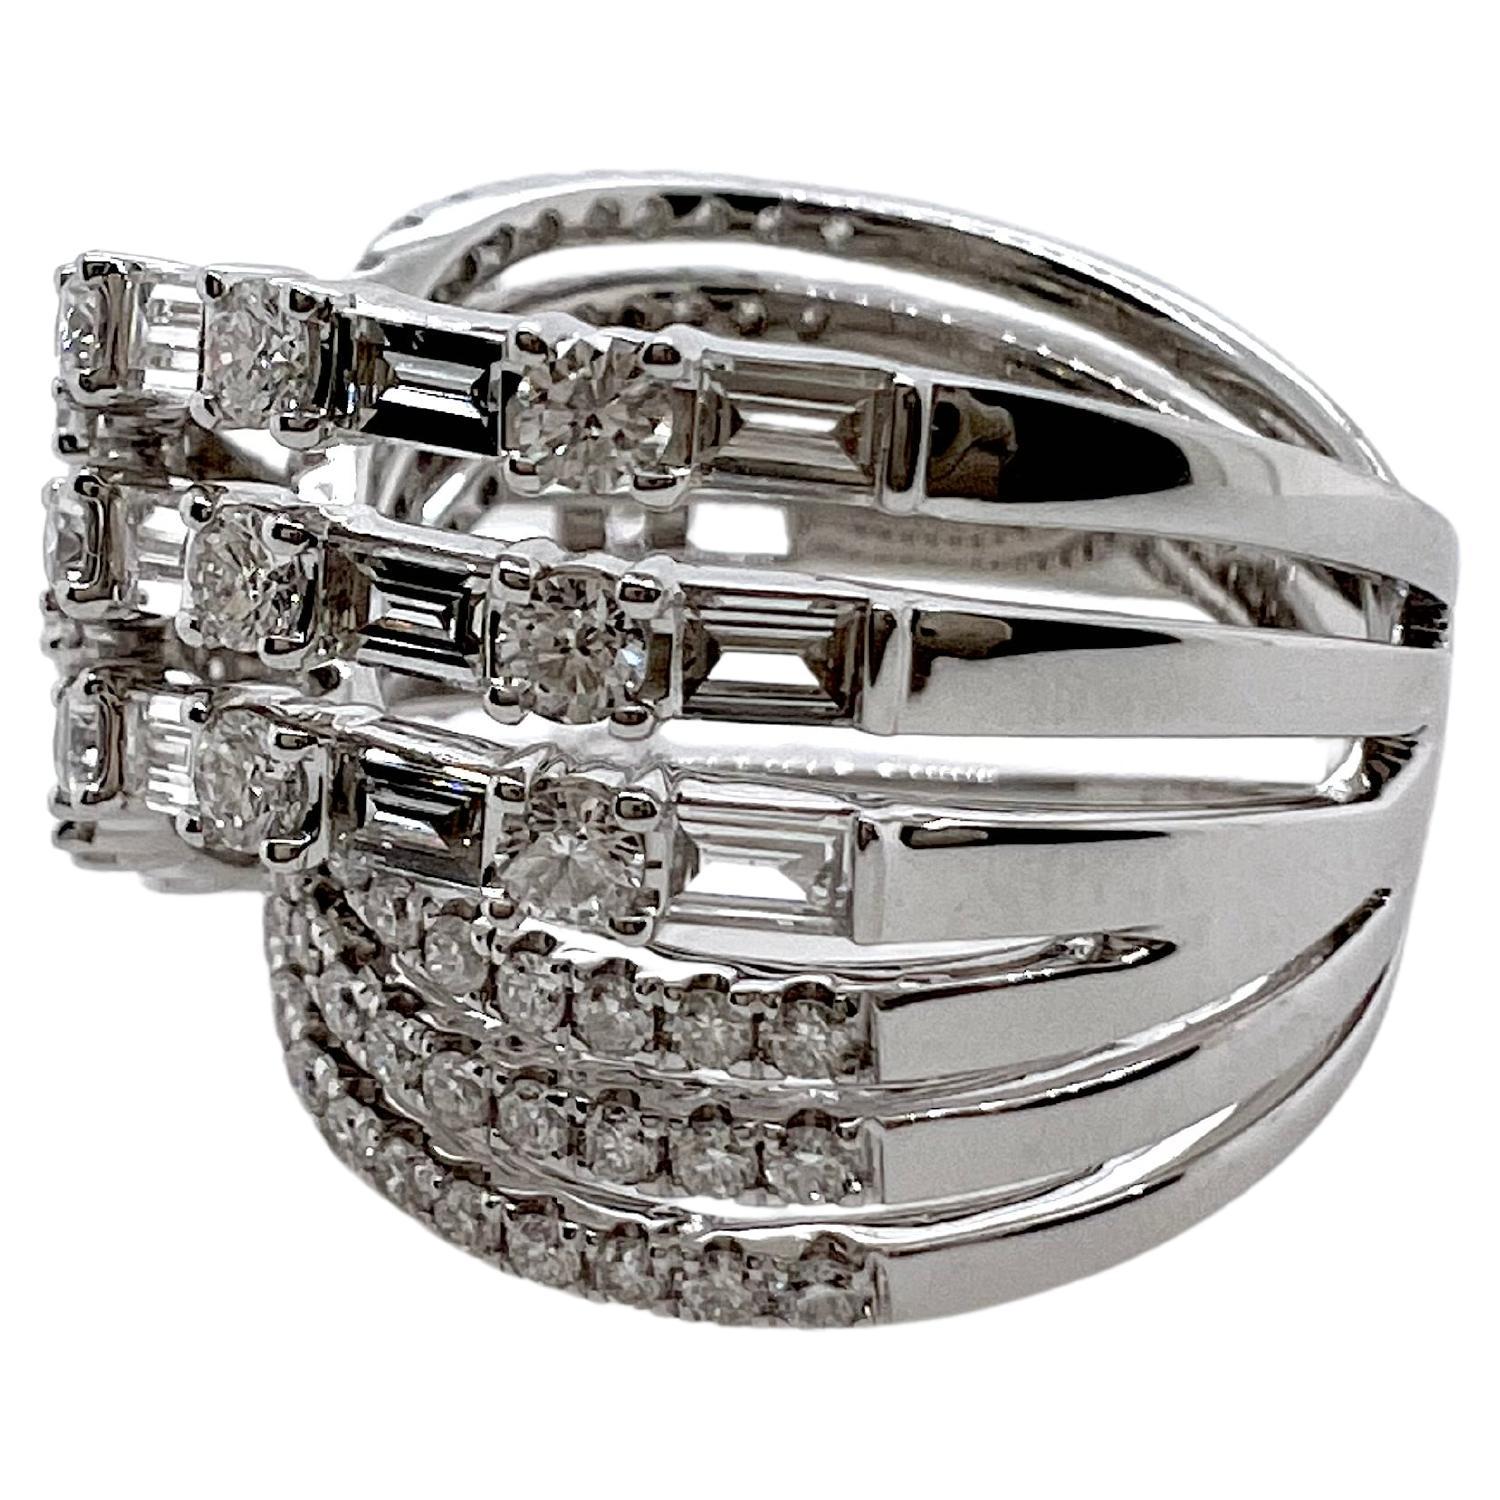 Dieser fantastische Diamantring hat 3 Reihen von Baguette- und runden Brillanten, die sich in einem symmetrischen Muster überkreuzen.  Es gibt 3 Reihen runder Diamanten, die unter 3 Reihen abwechselnder Baguette- und runder Brillanten fließen, um